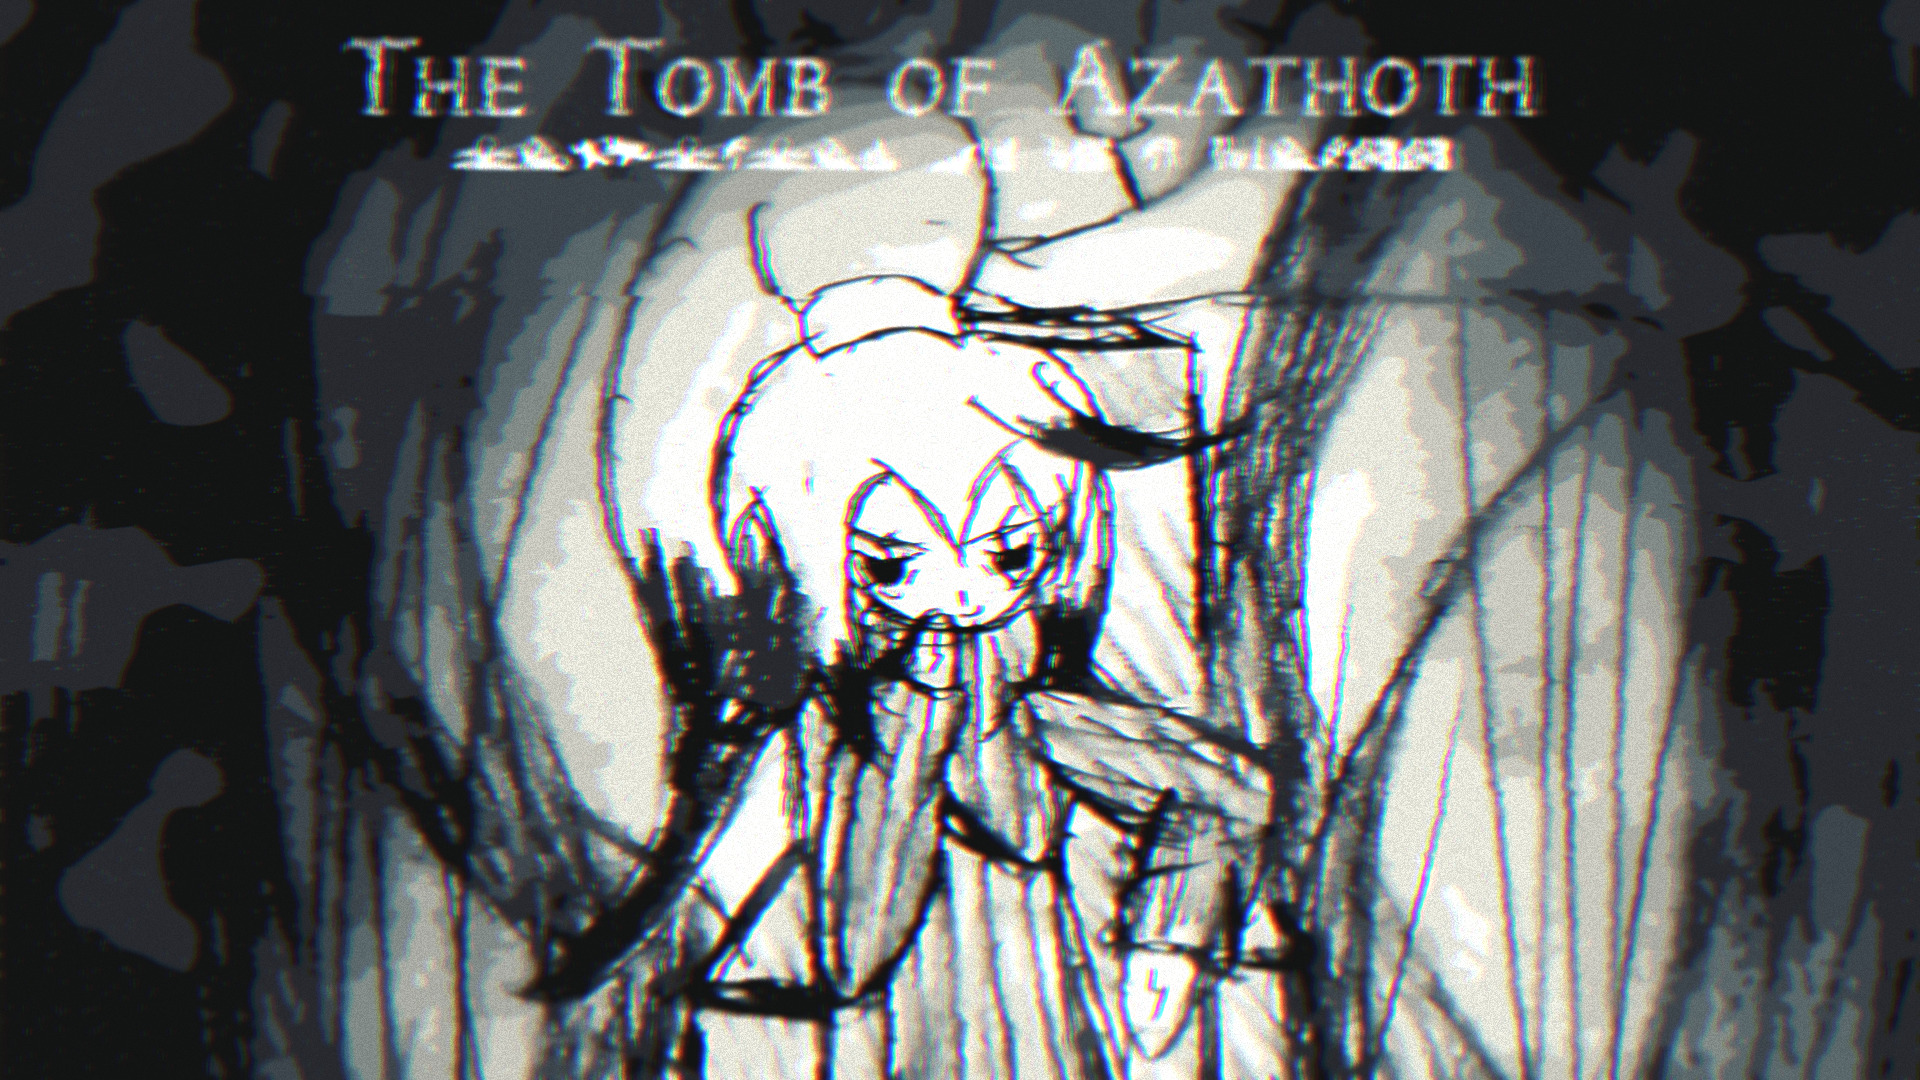 The Tomb of Azathoth